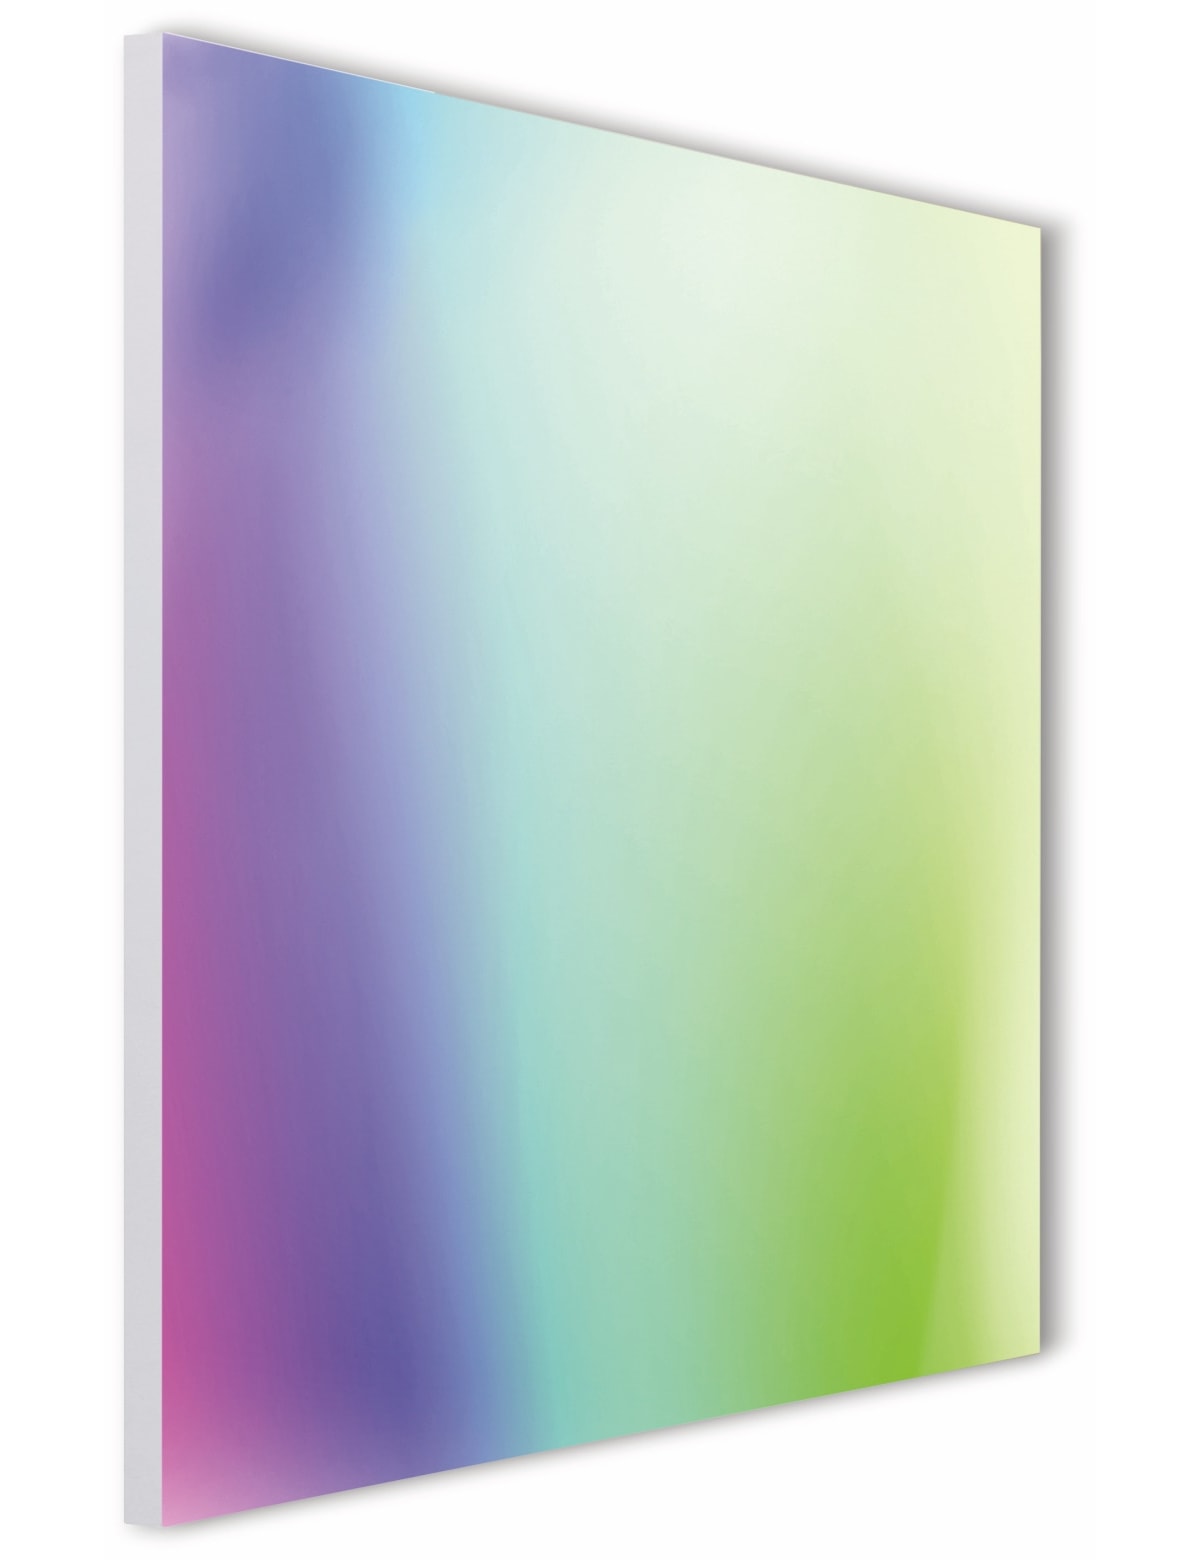 TINT LED-Panel Aris, 45x45 cm, 1700 lm, Rahmenlos, 24 W, RGB